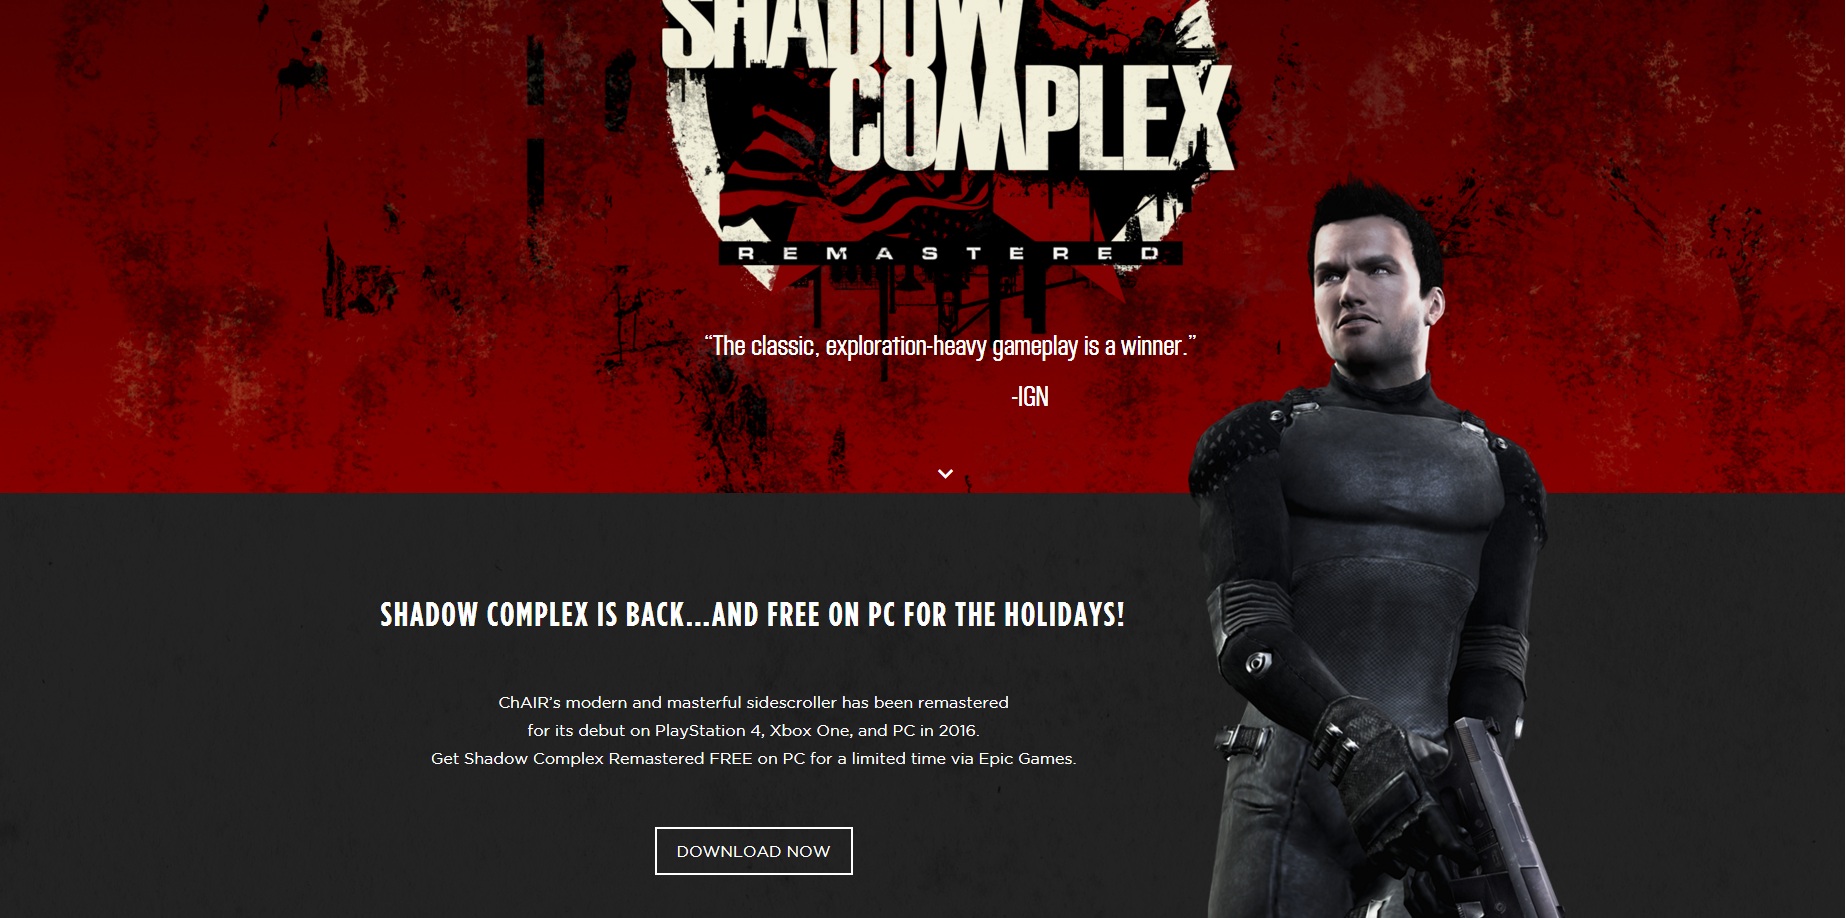 Nhanh tay tải miễn phí game hành động hấp dẫn: Shadow Complex